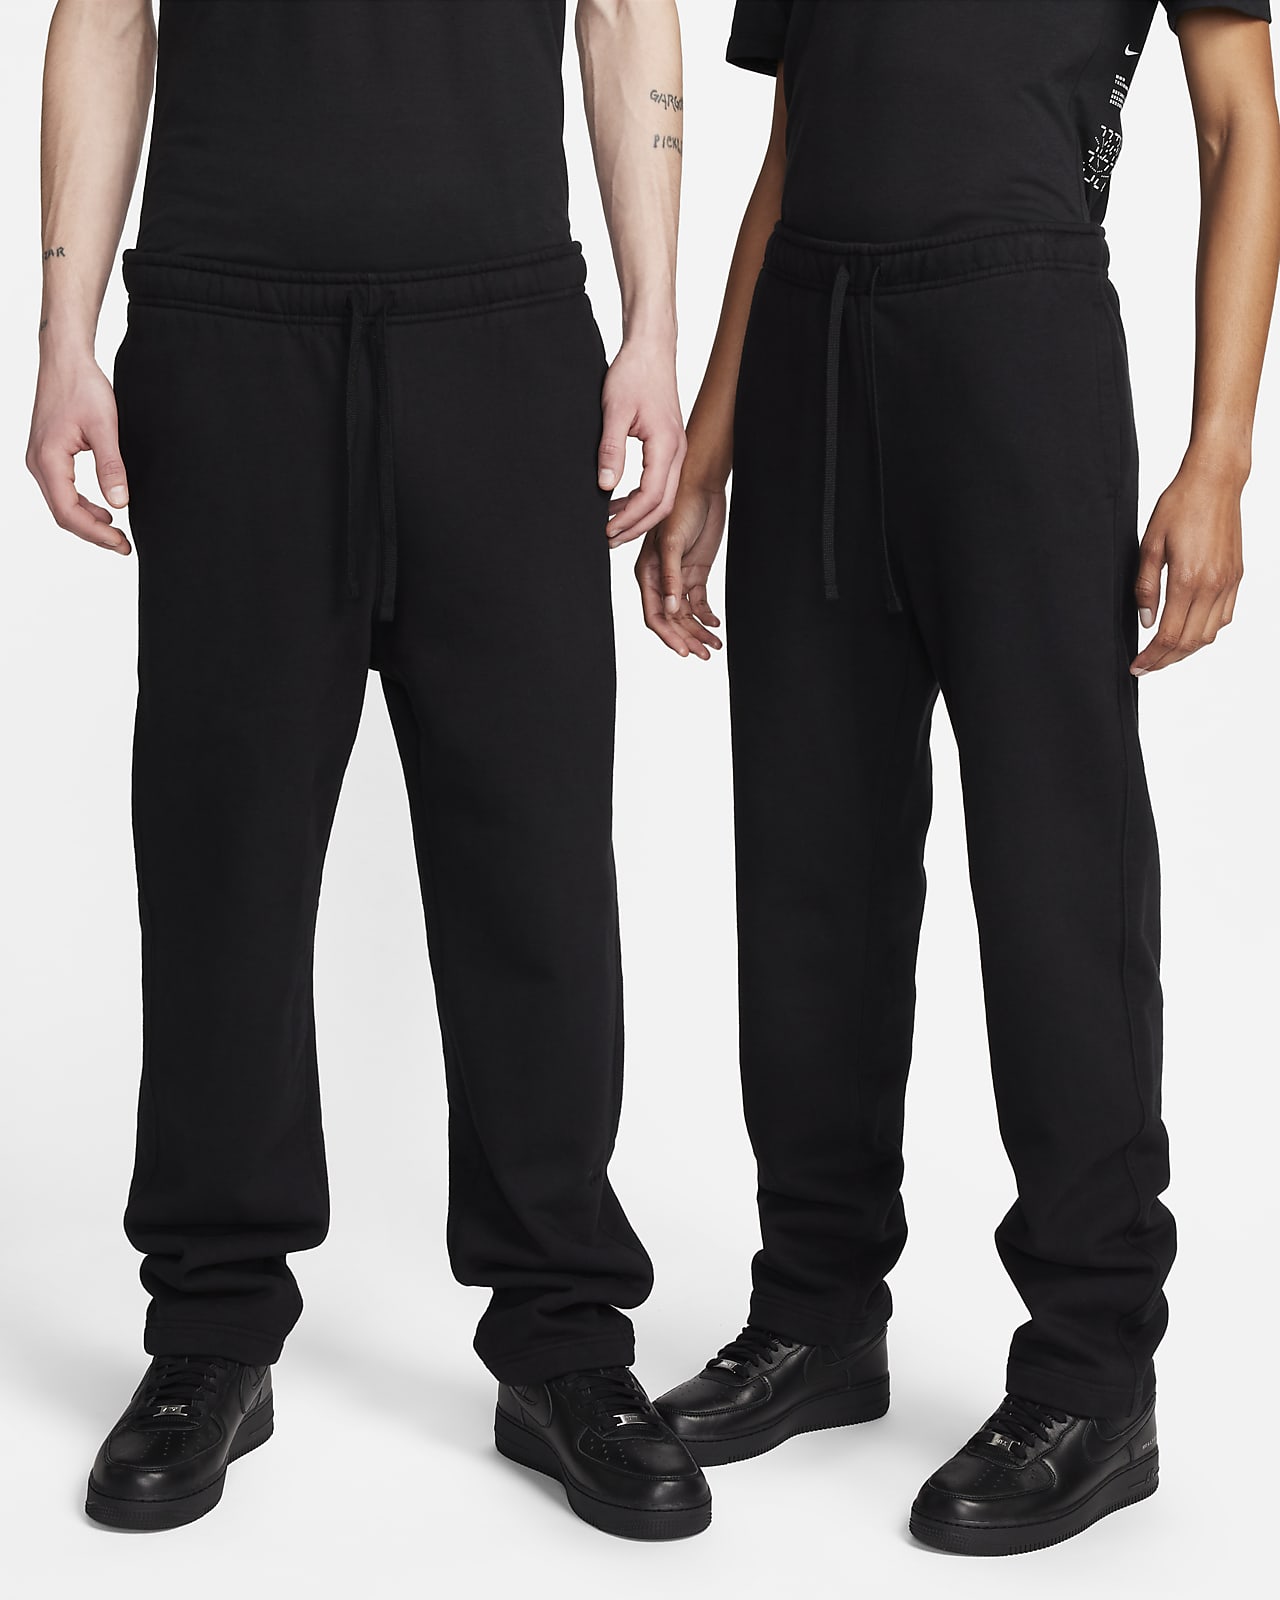 Pantalon en Fleece Nike x MMW